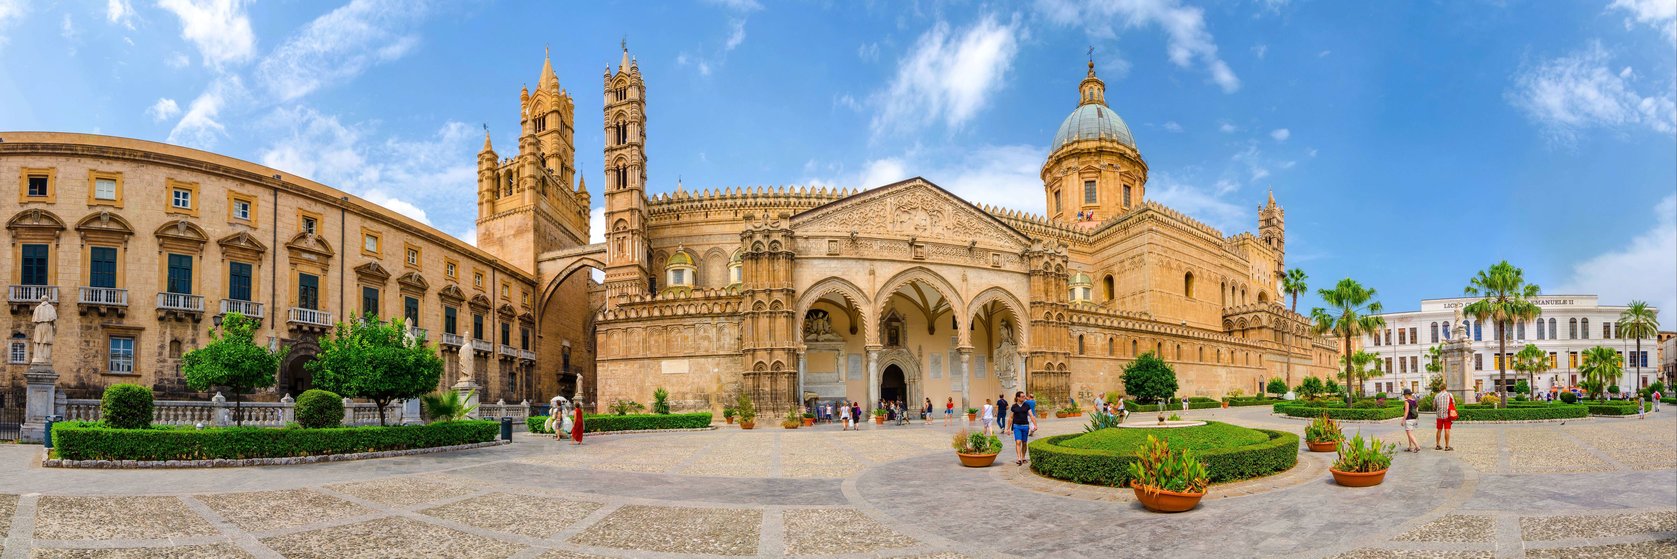 Dovolená Sicílie - Palermo